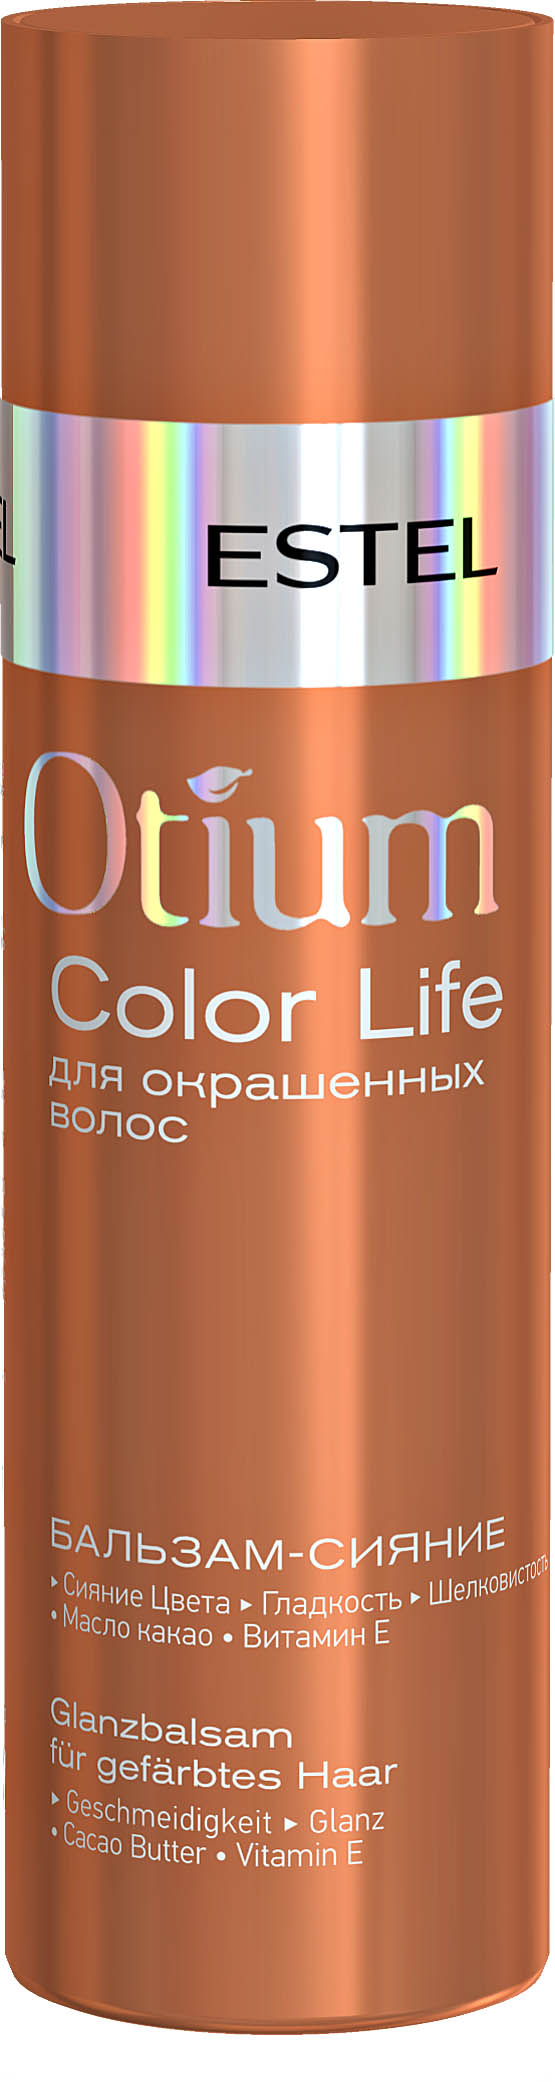 Бальзам-сияние для окрашенных волос OTIUM COLOR LIFE, 200 мл